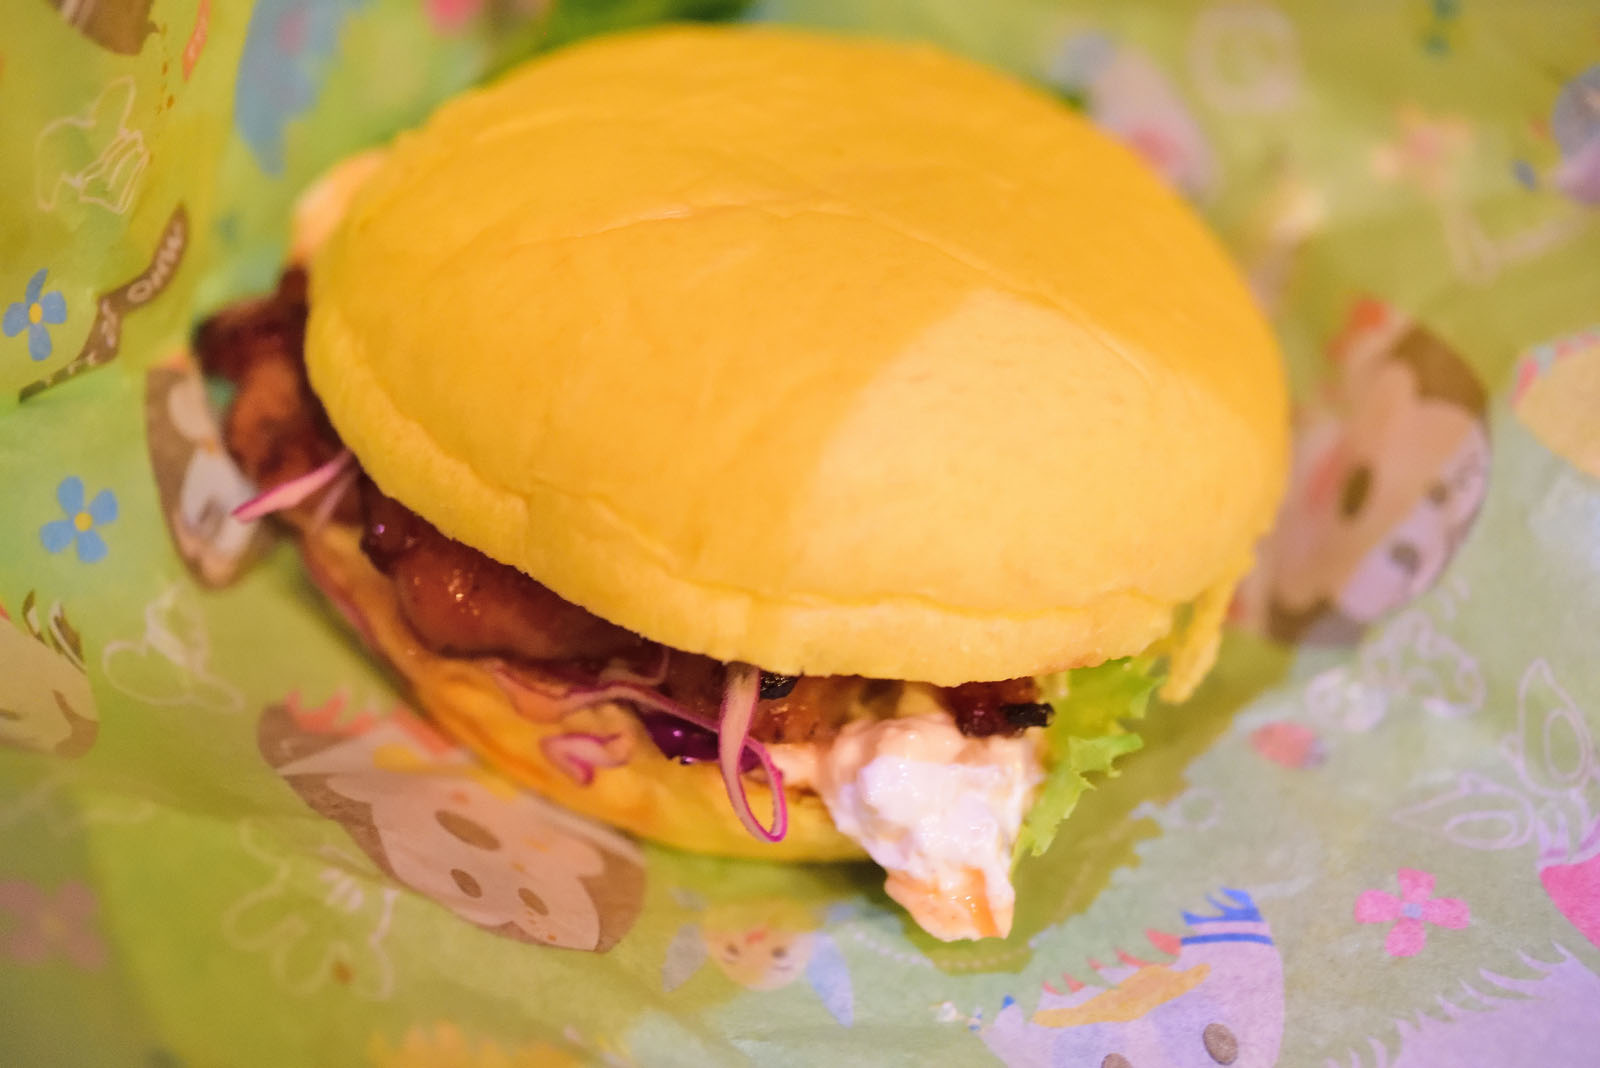 セバスチャンのカリプソキッチン ディズニー・イースター2019スペシャルセット テリヤキチキンとエッグサラダのサンド